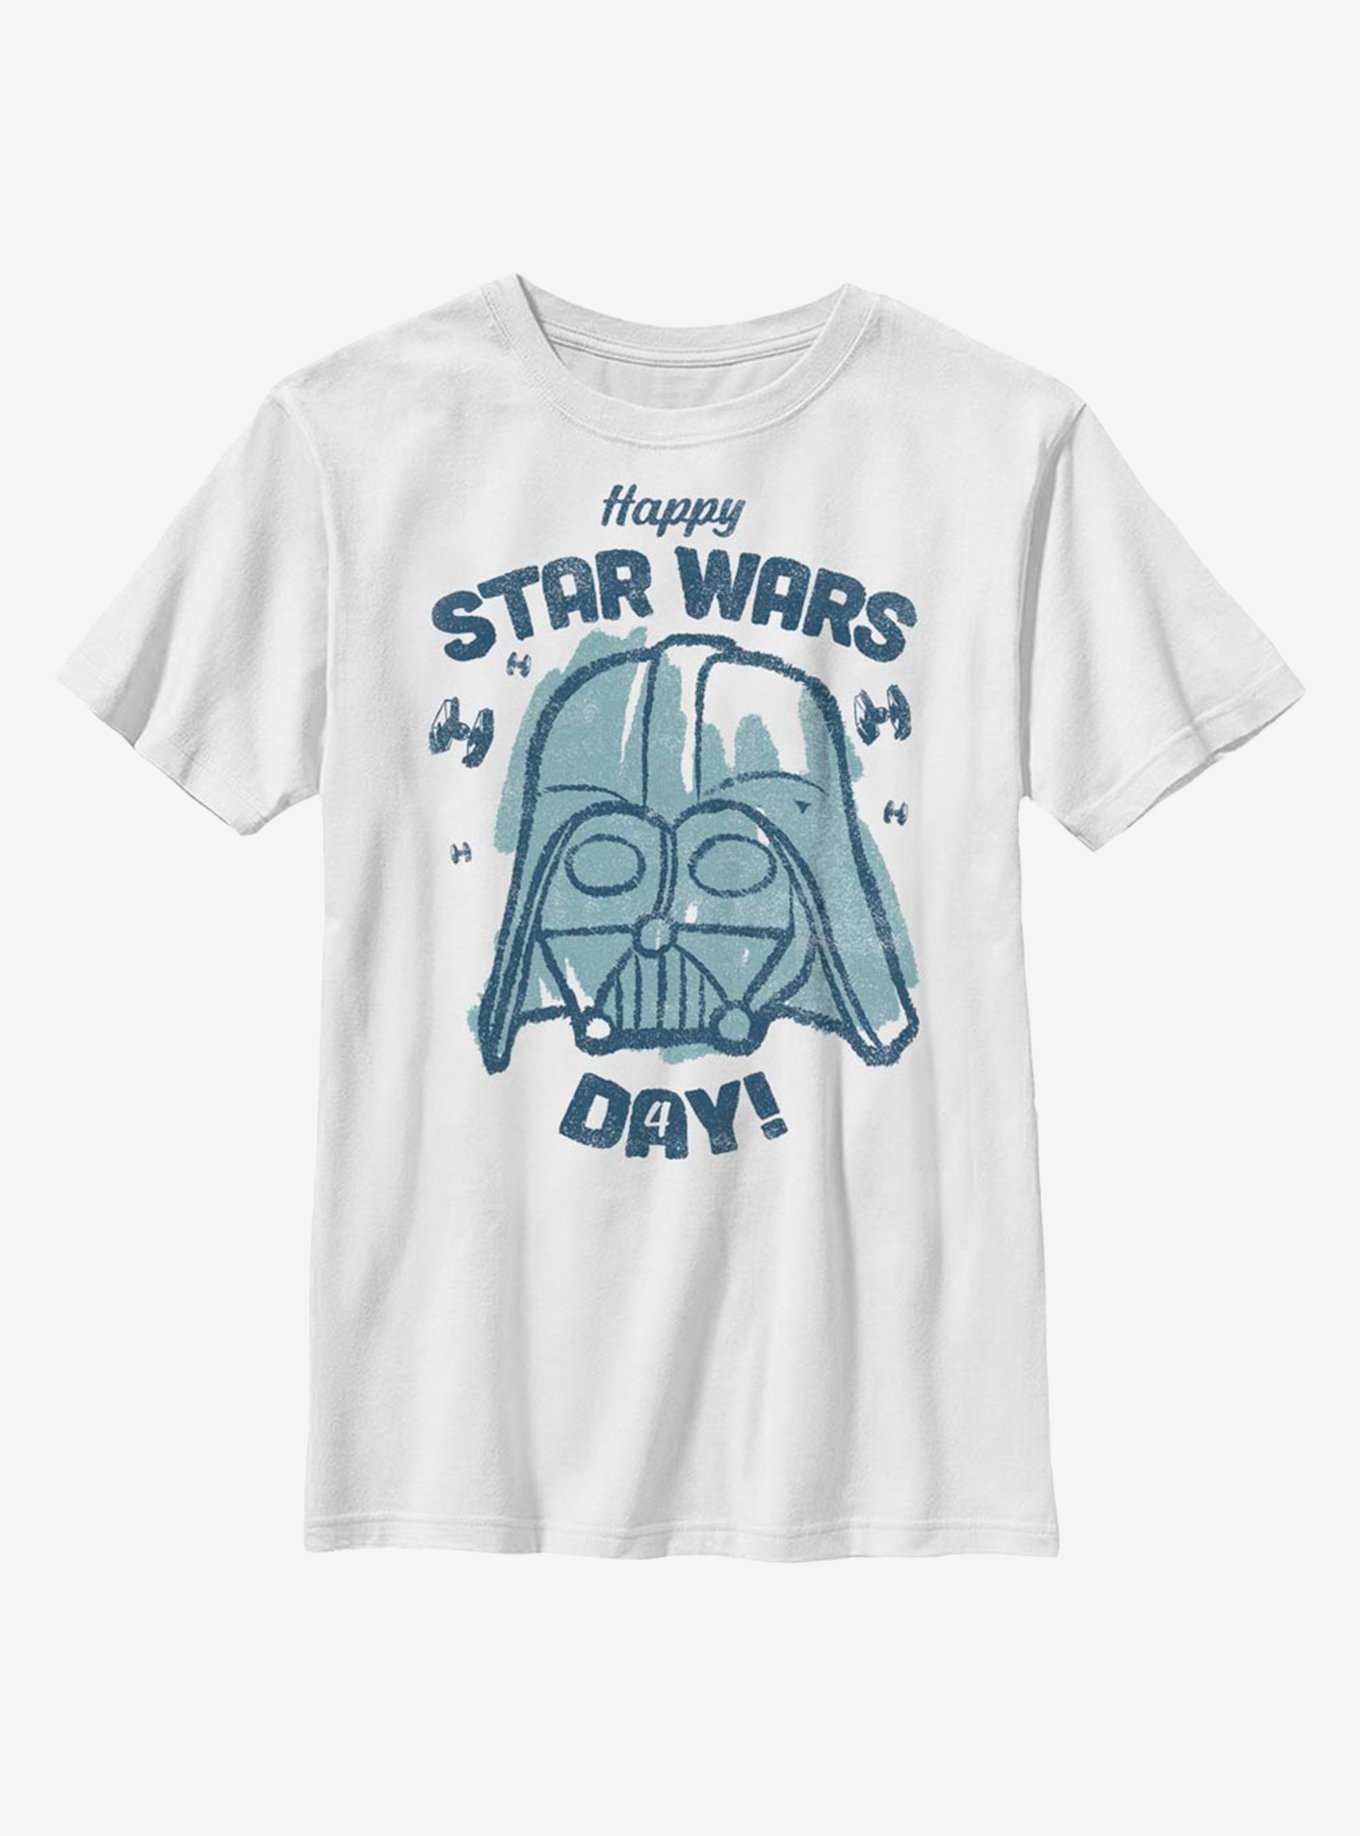 Star Wars Vader Happy Star Wars Day! Youth T-Shirt, , hi-res